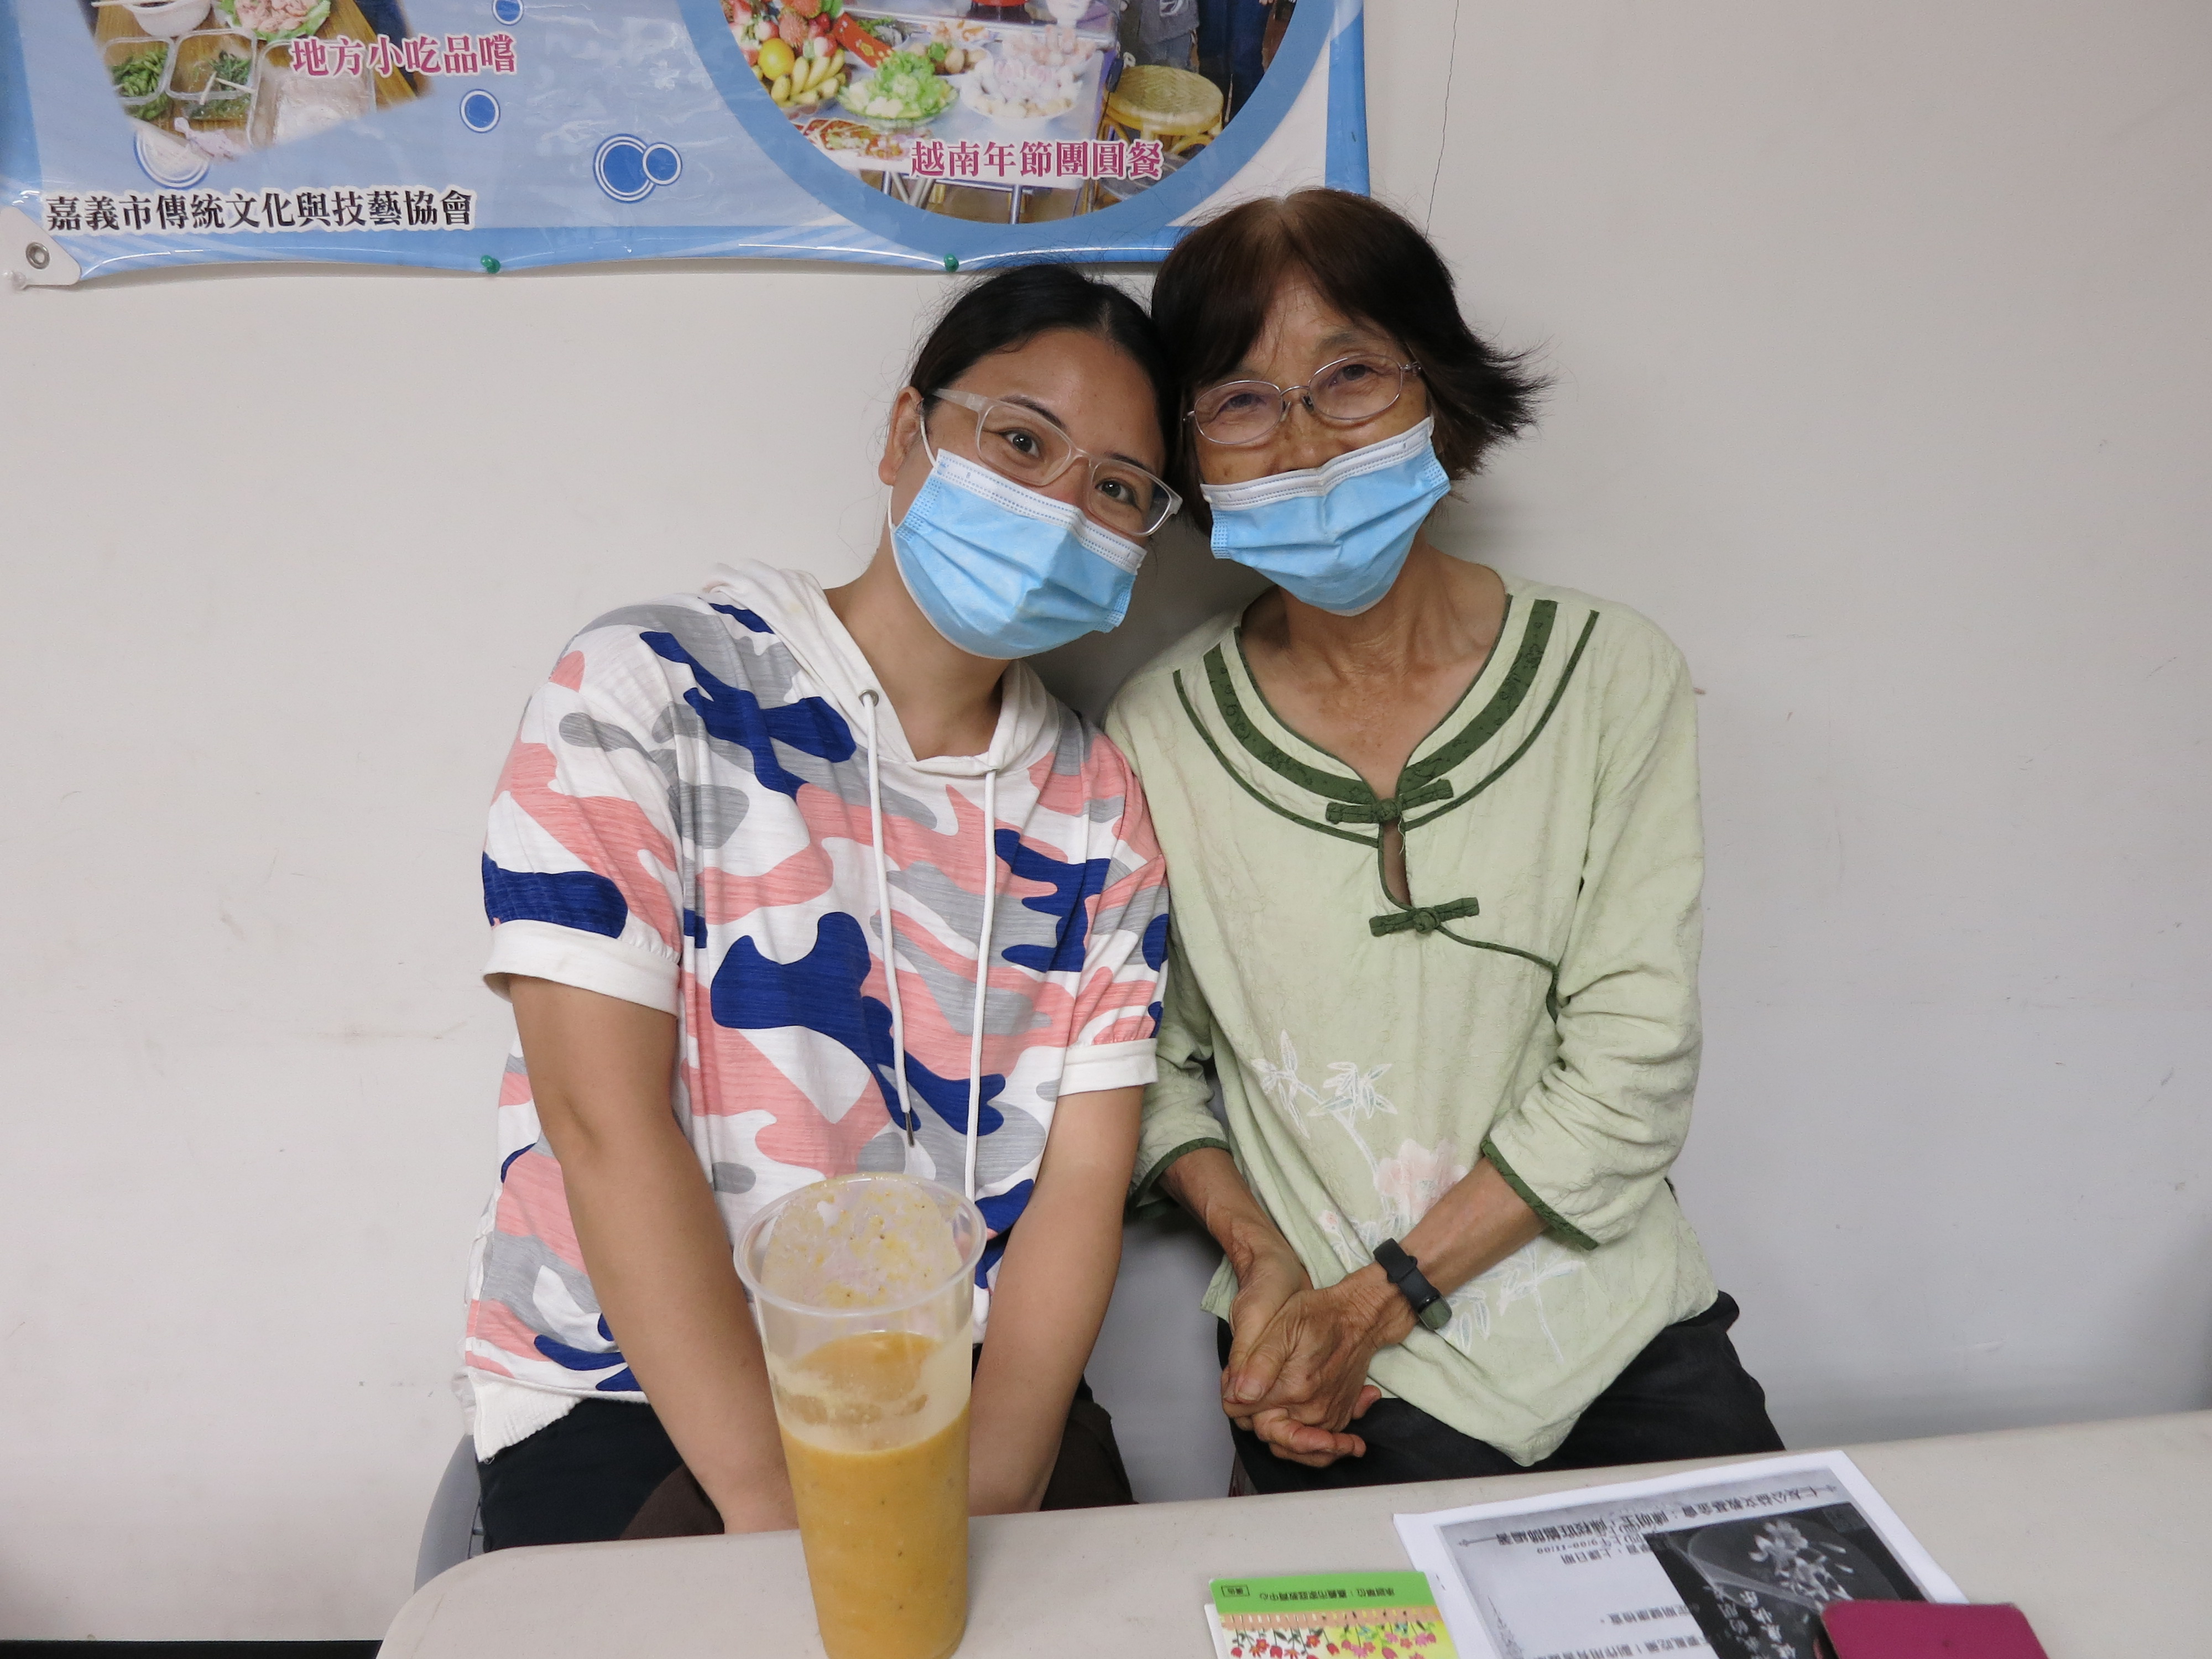 Di dân mới họ Lý (trái) đến từ Trung Quốc được mẹ chồng (phải) đưa đến tham gia khóa học giáo dục gia đình. (Nguồn ảnh: Trạm Phục vụ của Sở Di dân tại thành phố Gia Nghĩa)